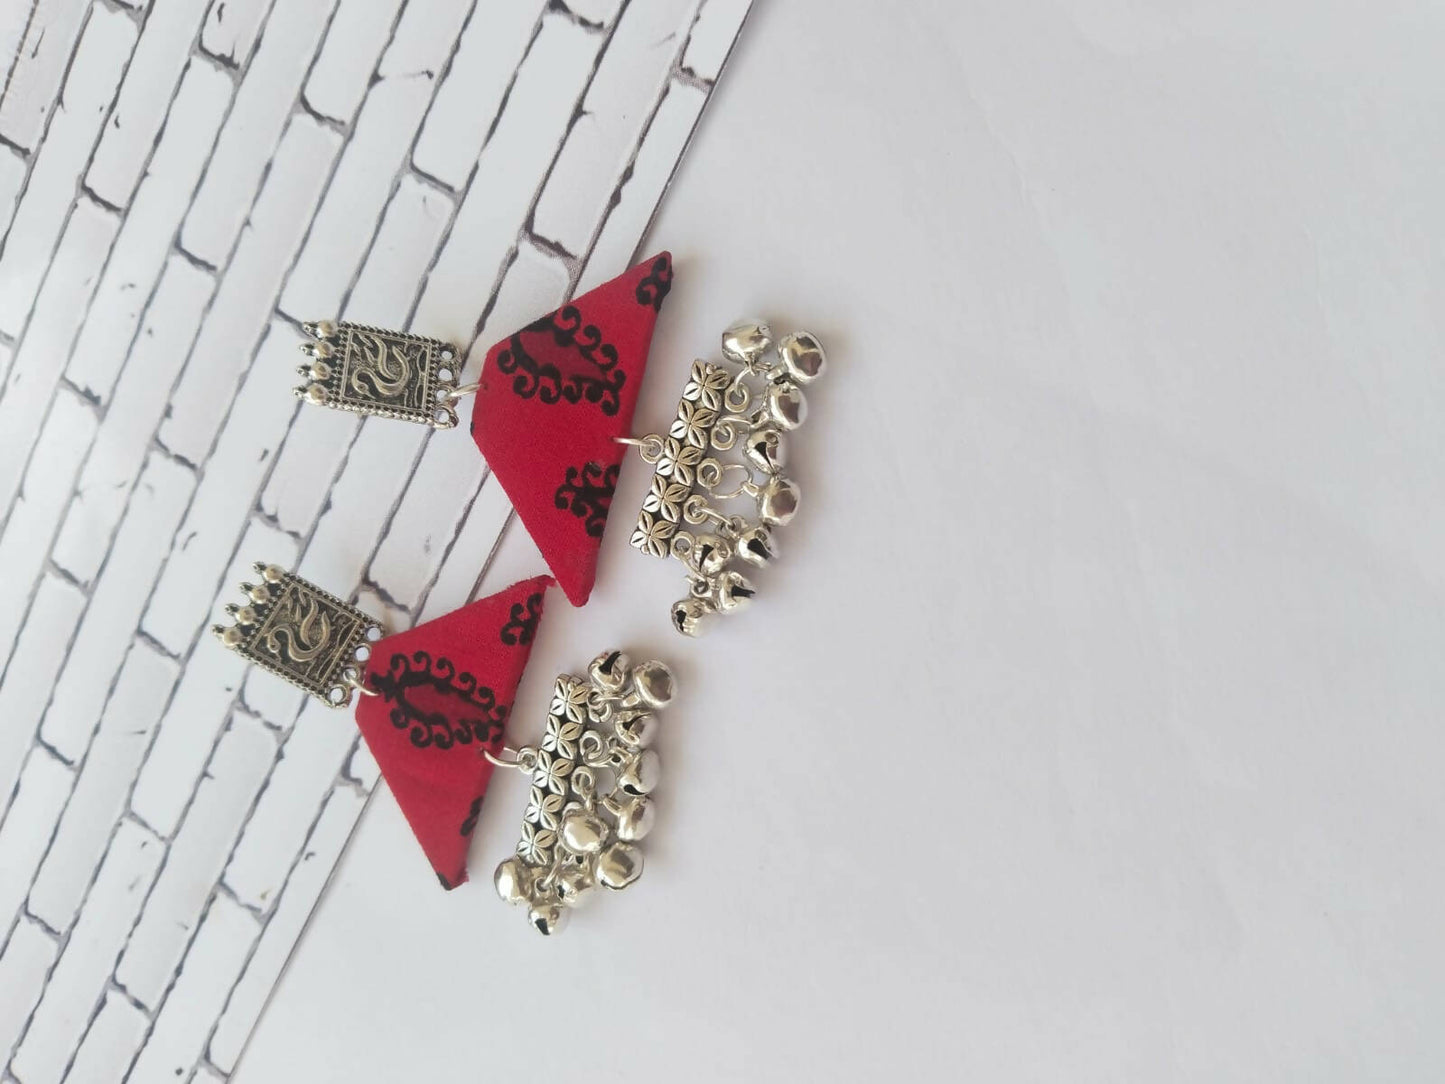 Red Printed Swan and Silver Ghungroo Earrings